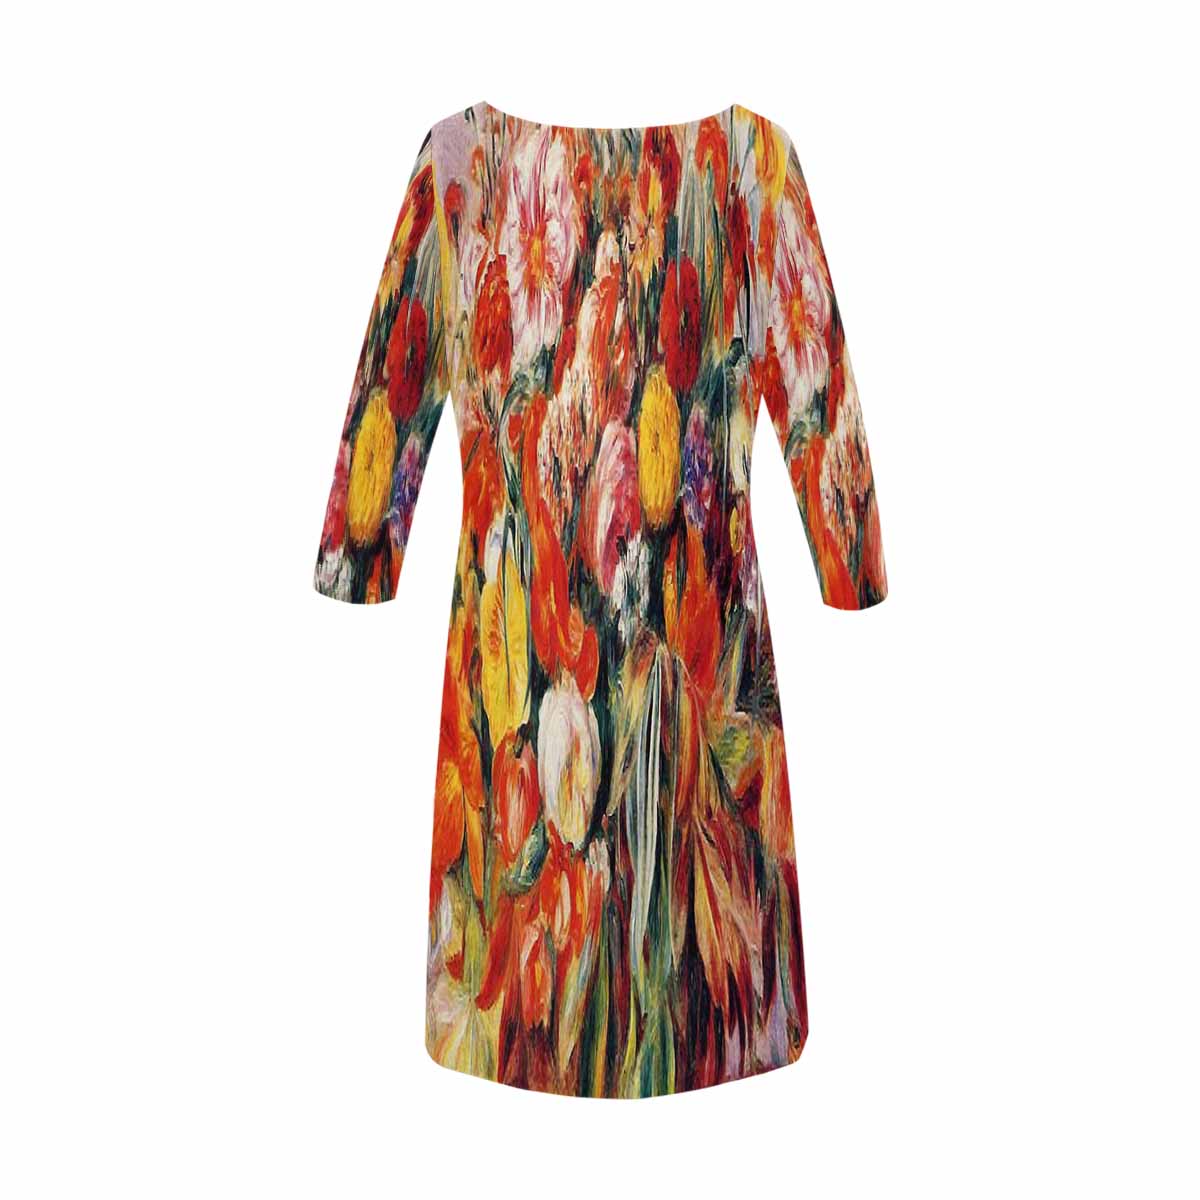 Vintage floral loose dress, model D29532 Design 19